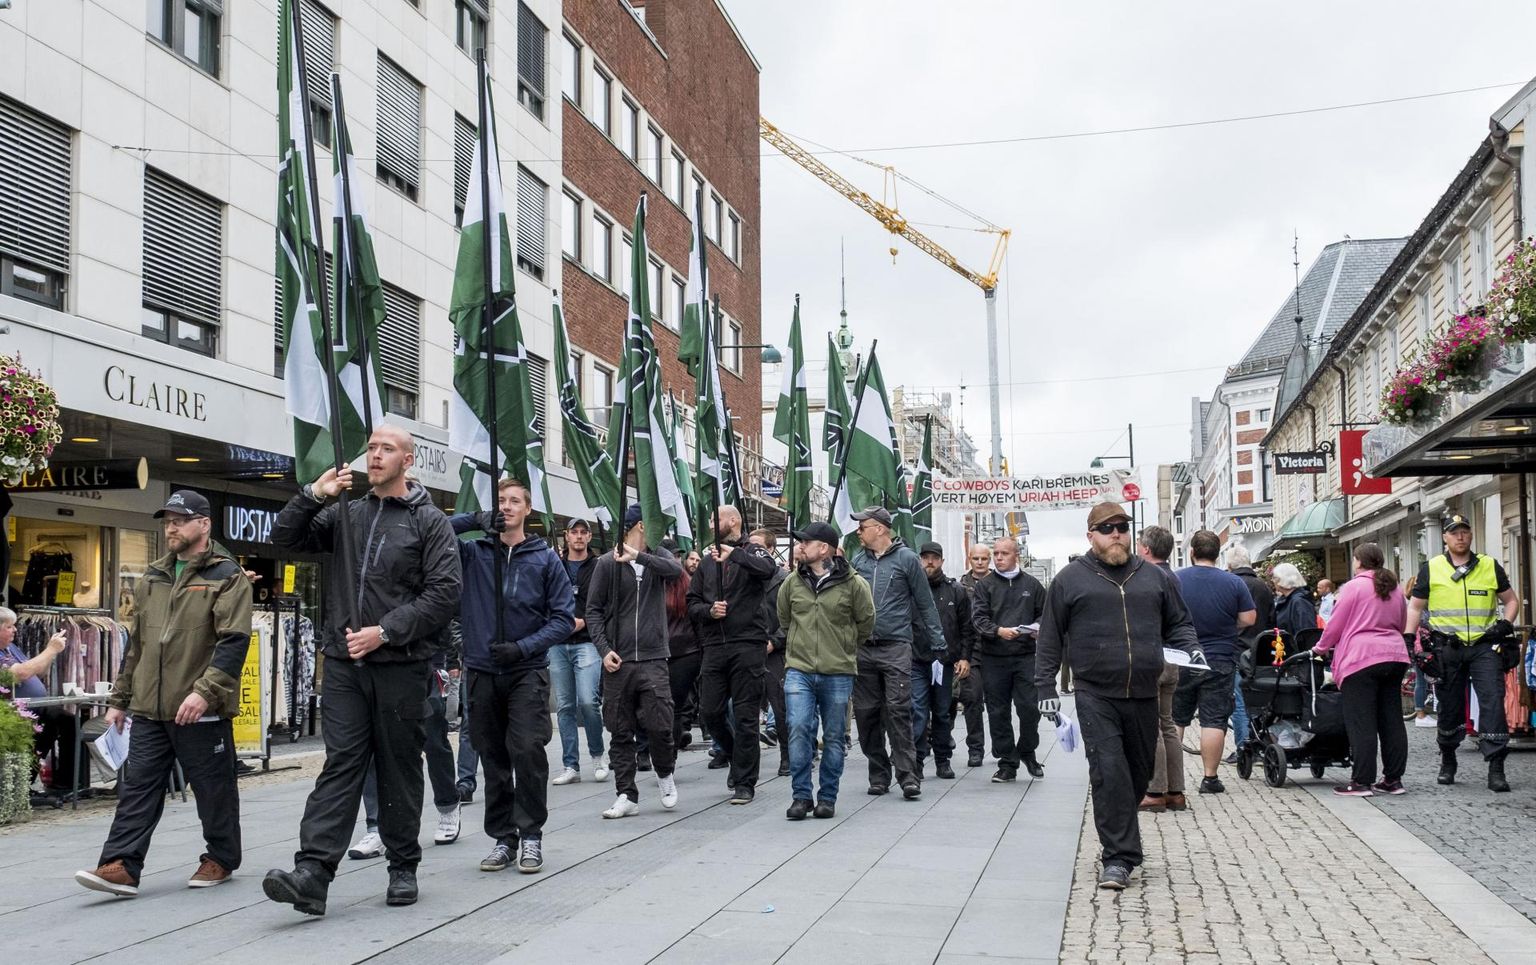 Neonatsliku Põhjala Vastupanuliikumise Norra haru marss Kristiansandis tunamullu. Just sealkandis on paremäärmuslastel riigis kõige tugevam kohalolu tänu piirkondlikele liidritele, kes on suutnud ümbruskonnast liikmeid värvata.